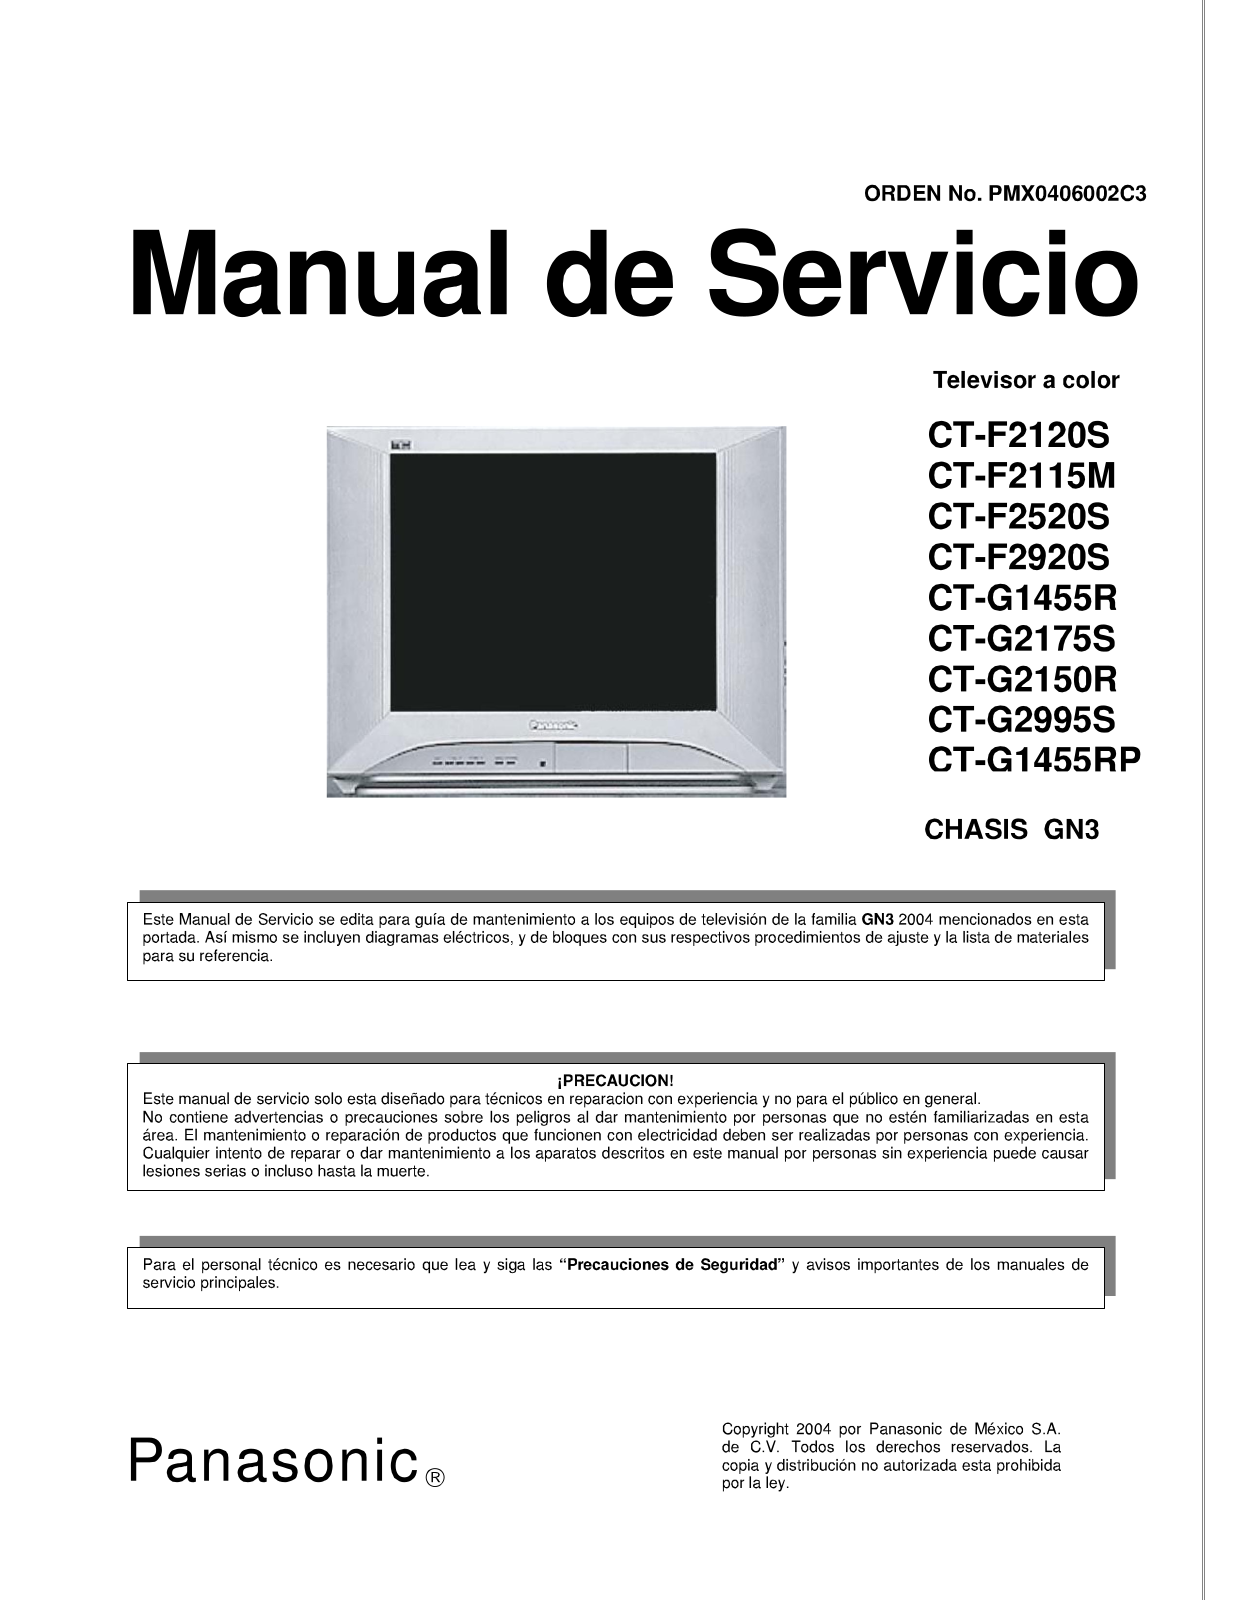 PANASONIC CTF2120S, CTF2115M, CTF2520S, CTF2920S, CTG1455R Service Manual